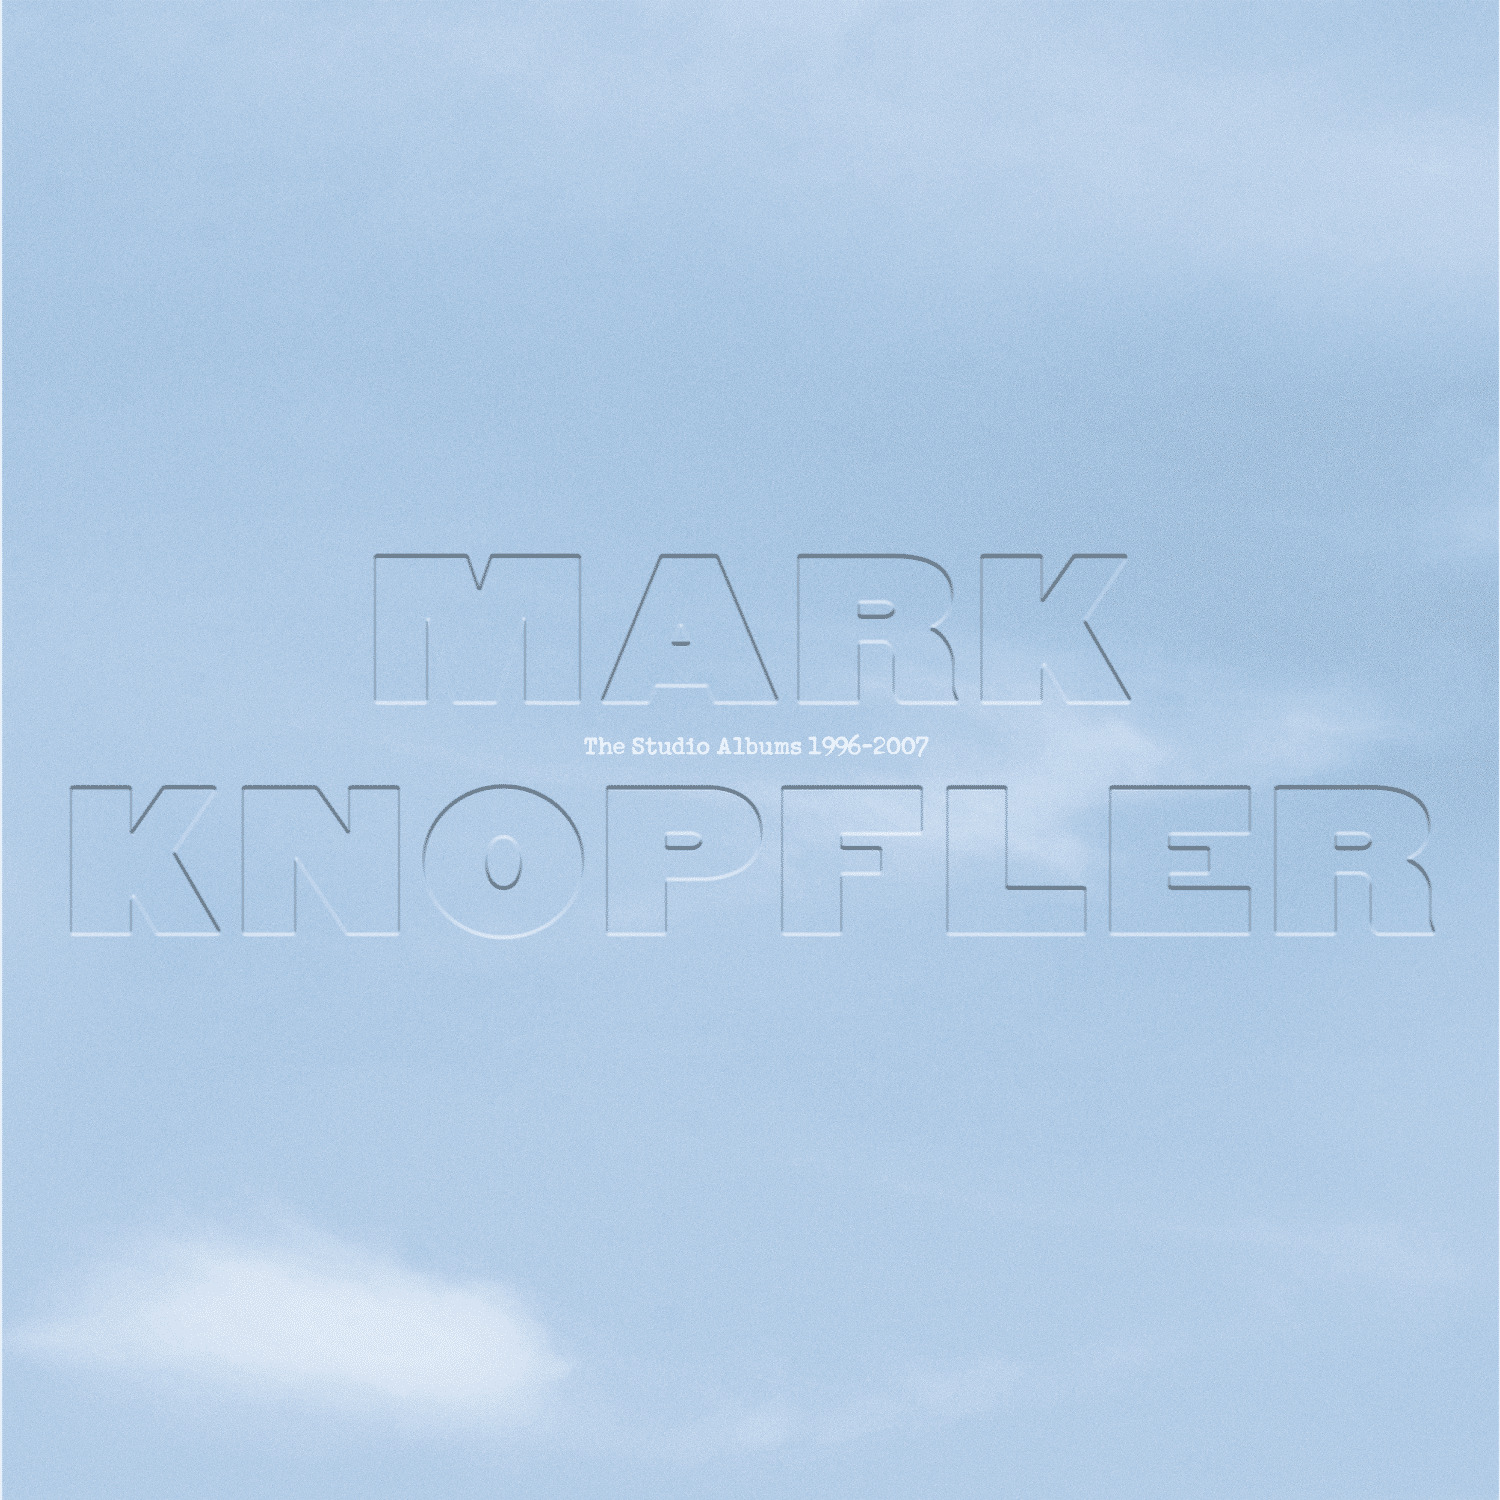 Mark knopfler one deep river. Mark Knopfler - the Studio albums 1996-2007 (2021). Mark Knopfler Golden Heart 1996. Mark Knopfler - the Studio albums 1996-2007 купить CD. Альбом Mark Knopfler Privateering.